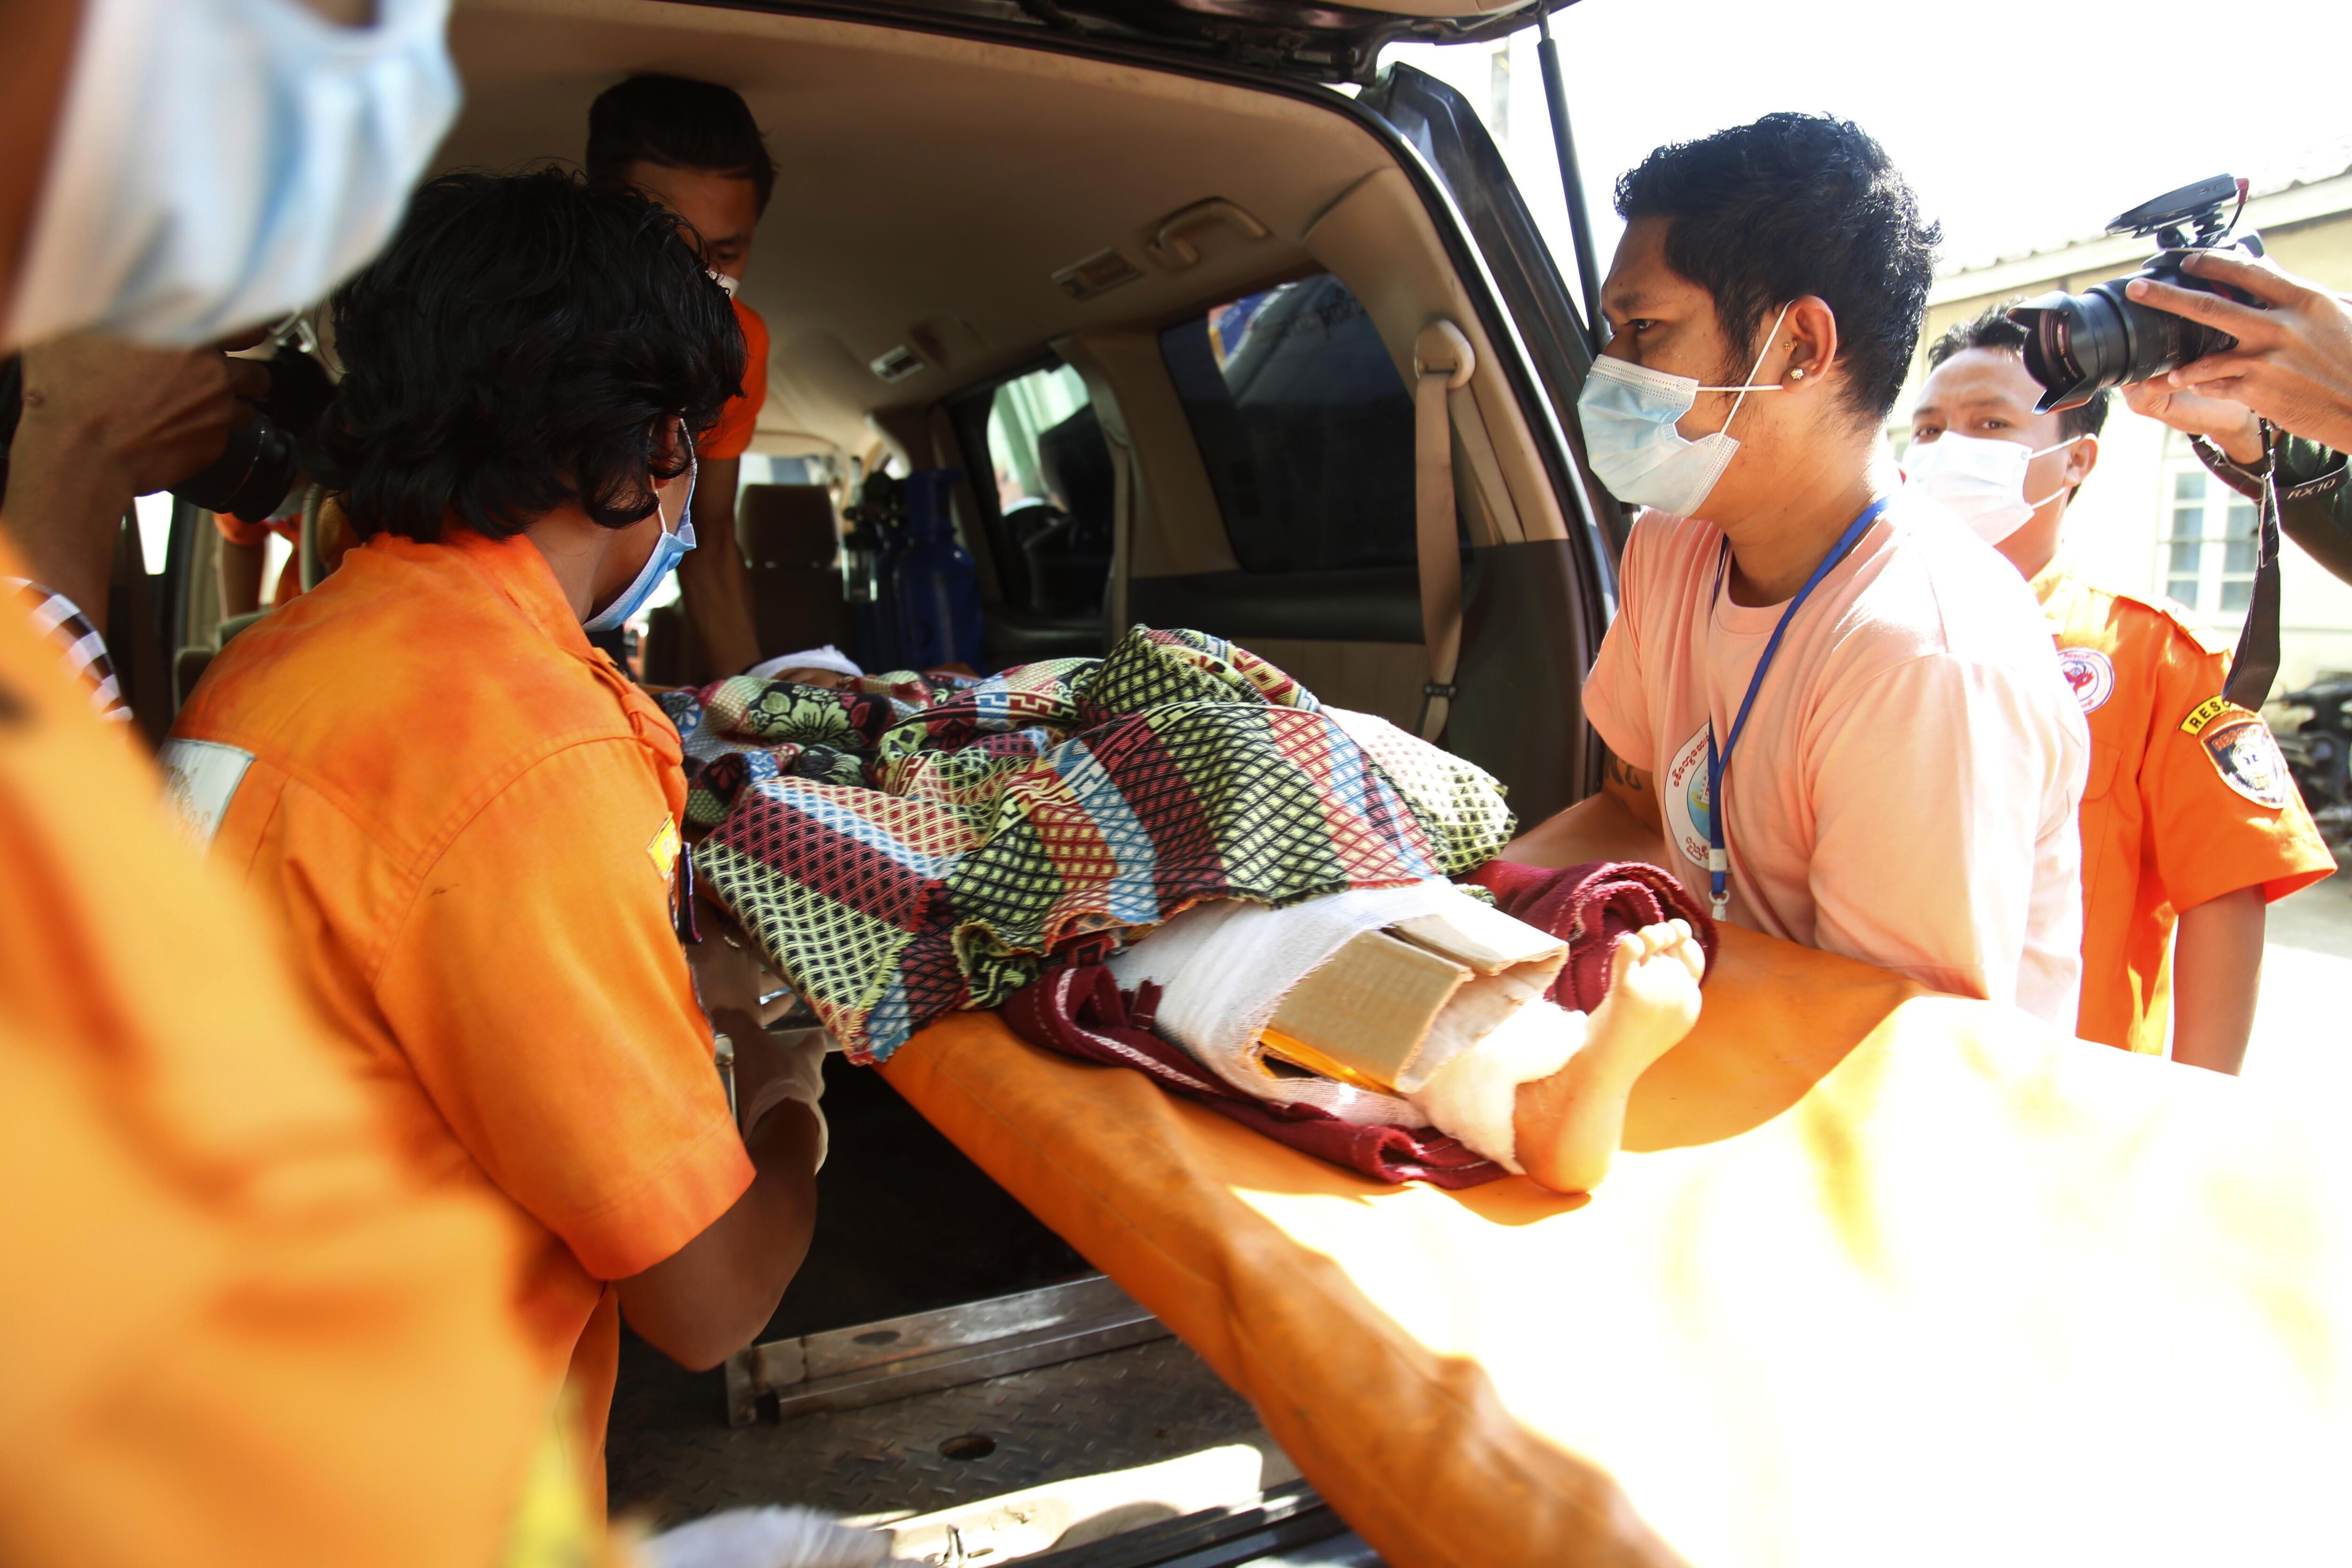 Los voluntarios de Rakhine State se afanaron en atender a los heridos del incidente